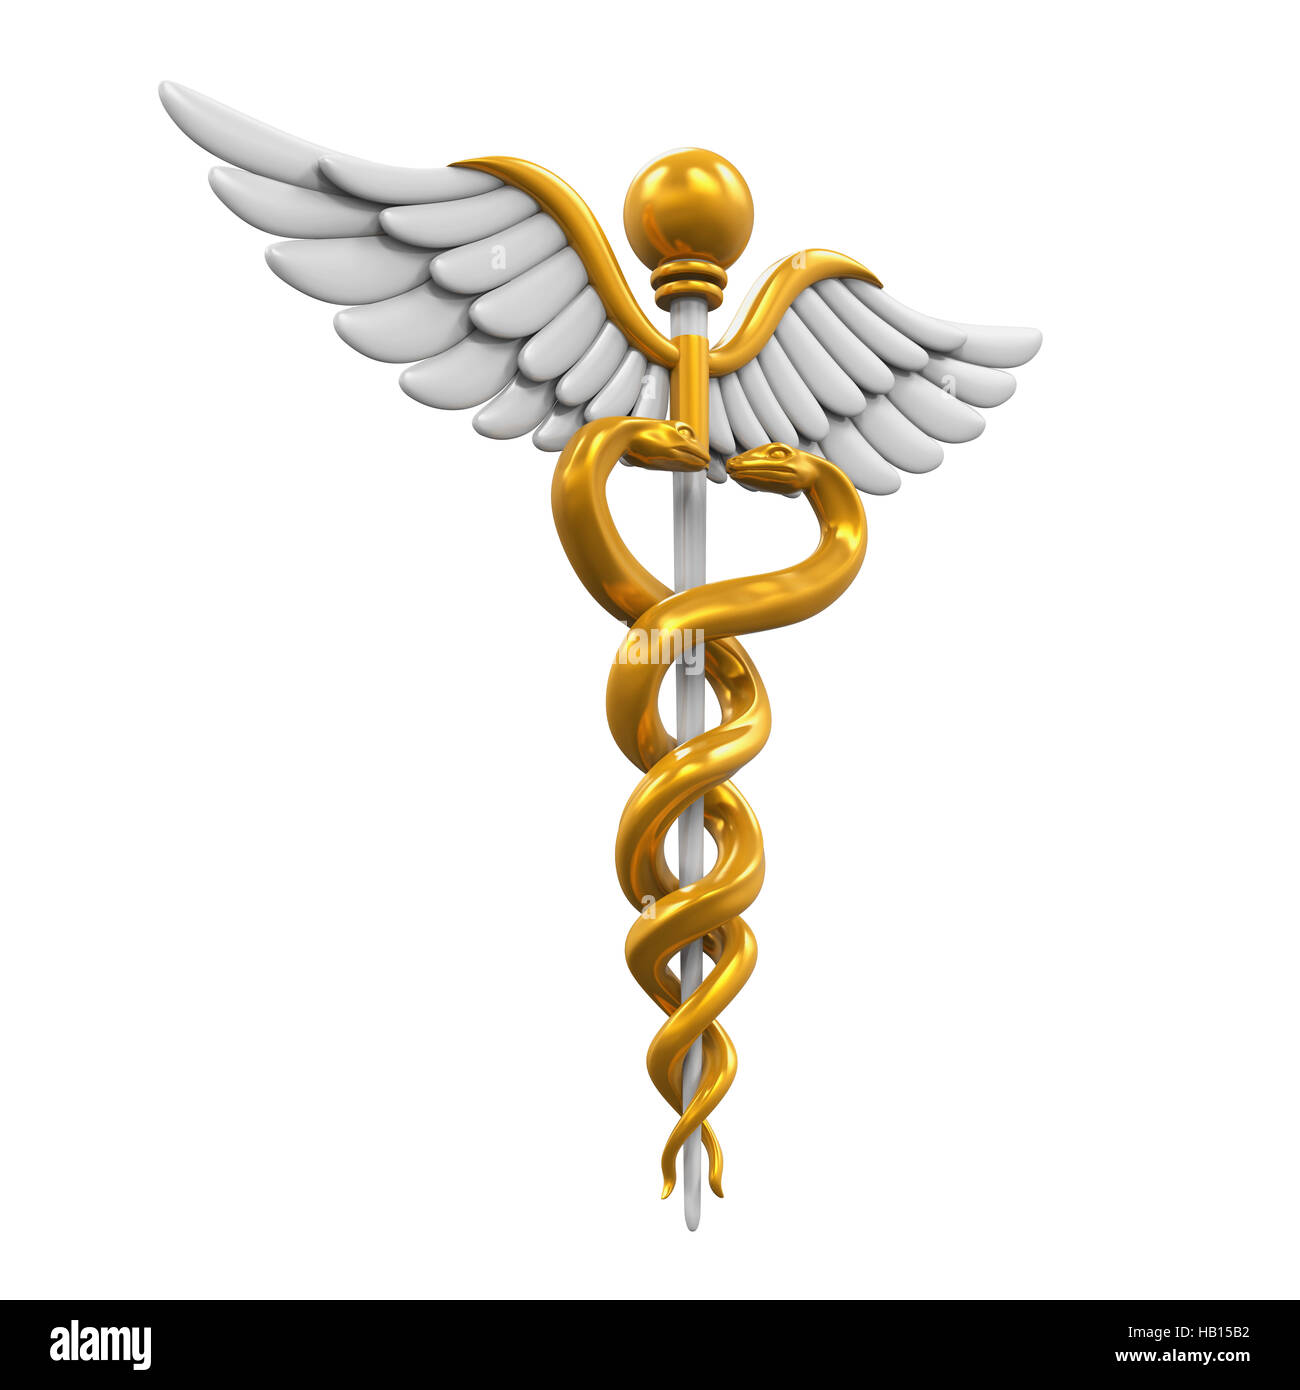 Caduceus Medical Symbol Stock Photo